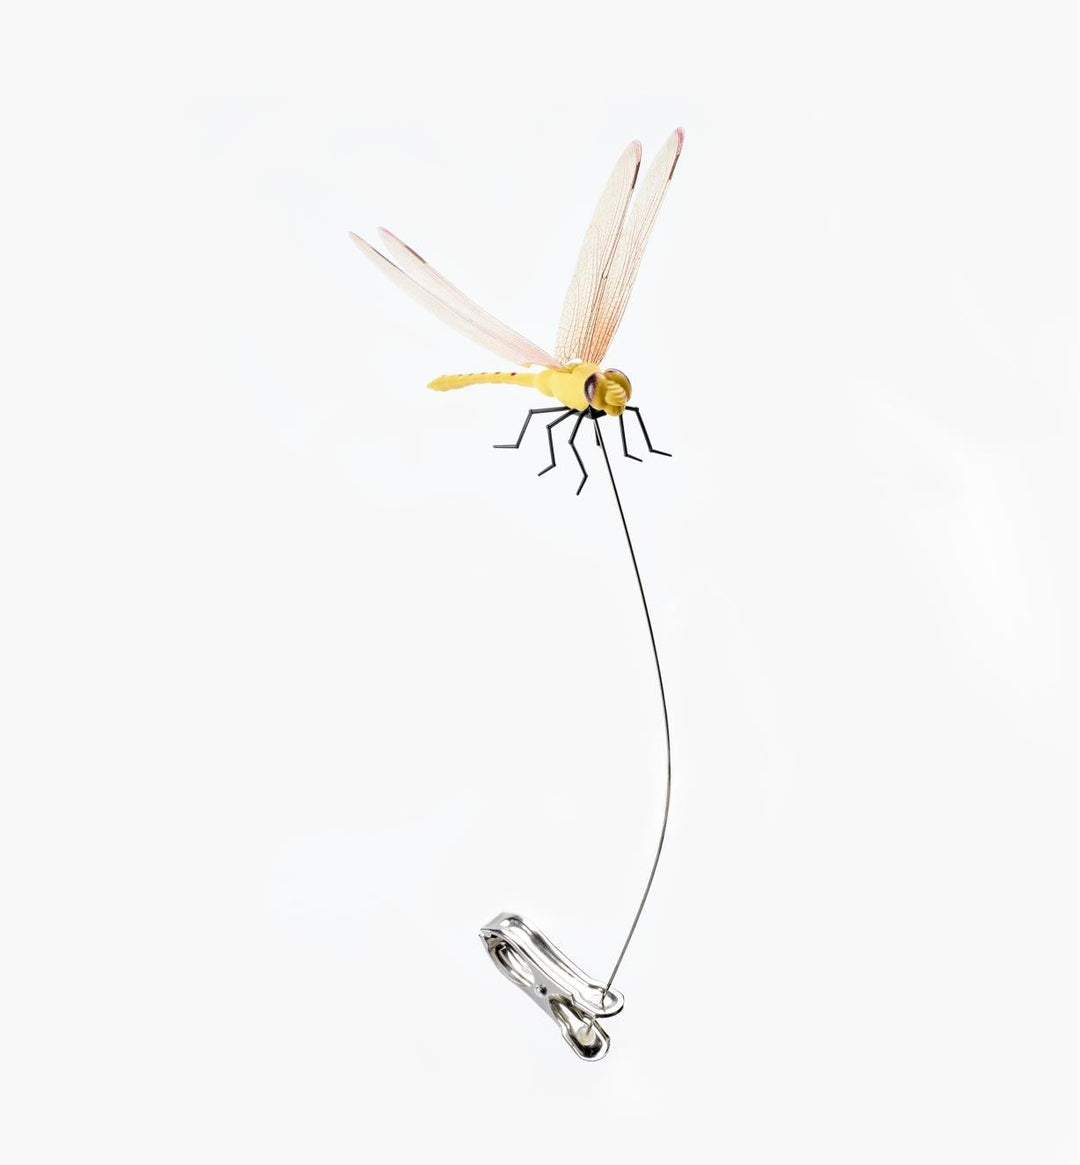 Get Your Bug Dragonfly Wingman Répulsif naturel à clipser pour cerfs et mouches à cheval 